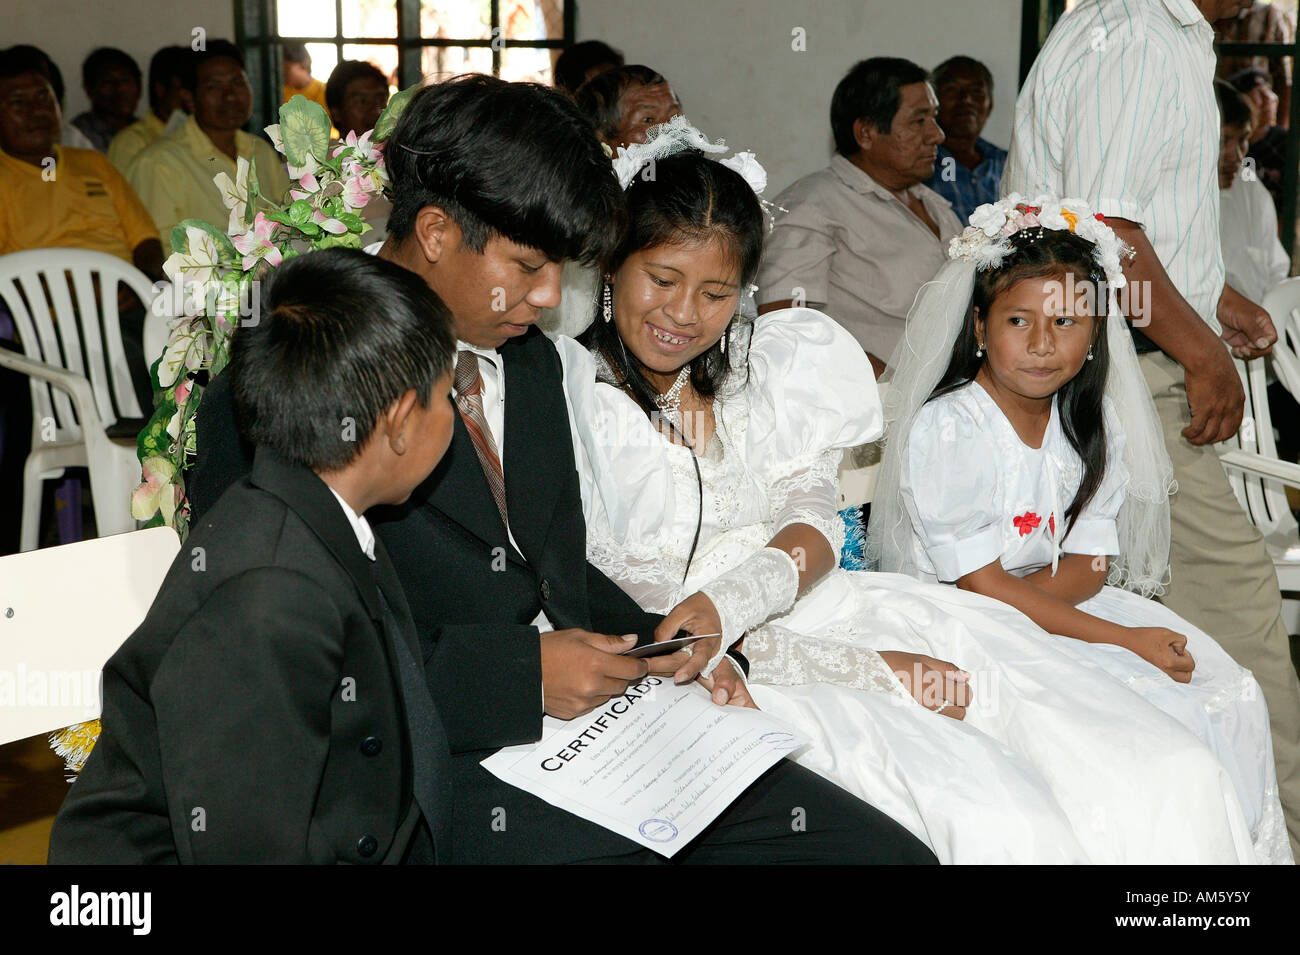 Coppia di sposi con figli dei fiori, matrimonio indiano, Loma Plata, Chaco, Paraguay, Sud America Foto Stock